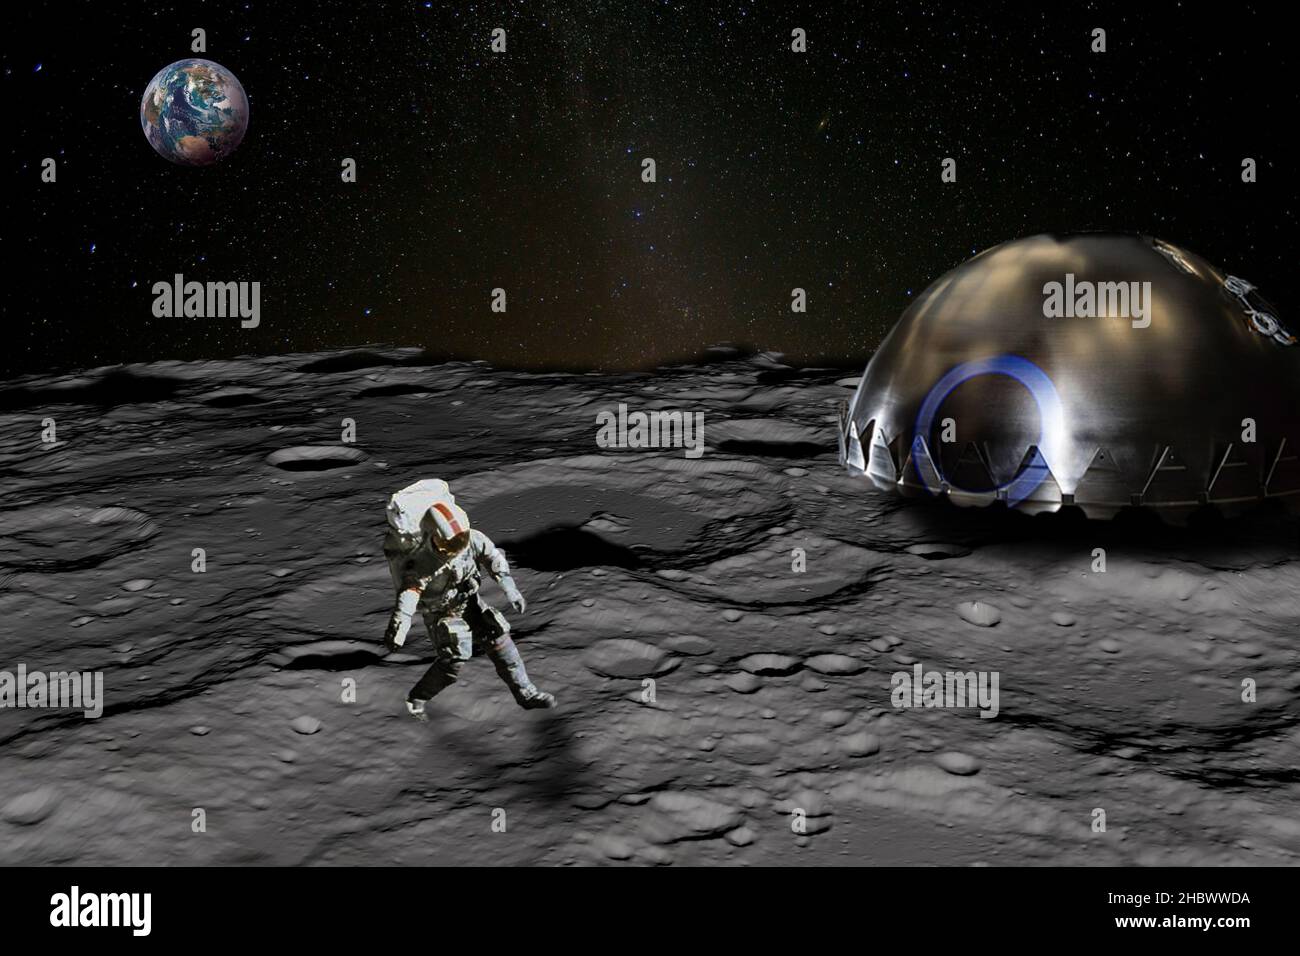 Astronaut auf der Mondoberfläche nahe der Mondbasis erhebt sich der Planet Erde über den Horizont. Elemente dieses Bildes, die von der NASA eingerichtet wurden. Stockfoto